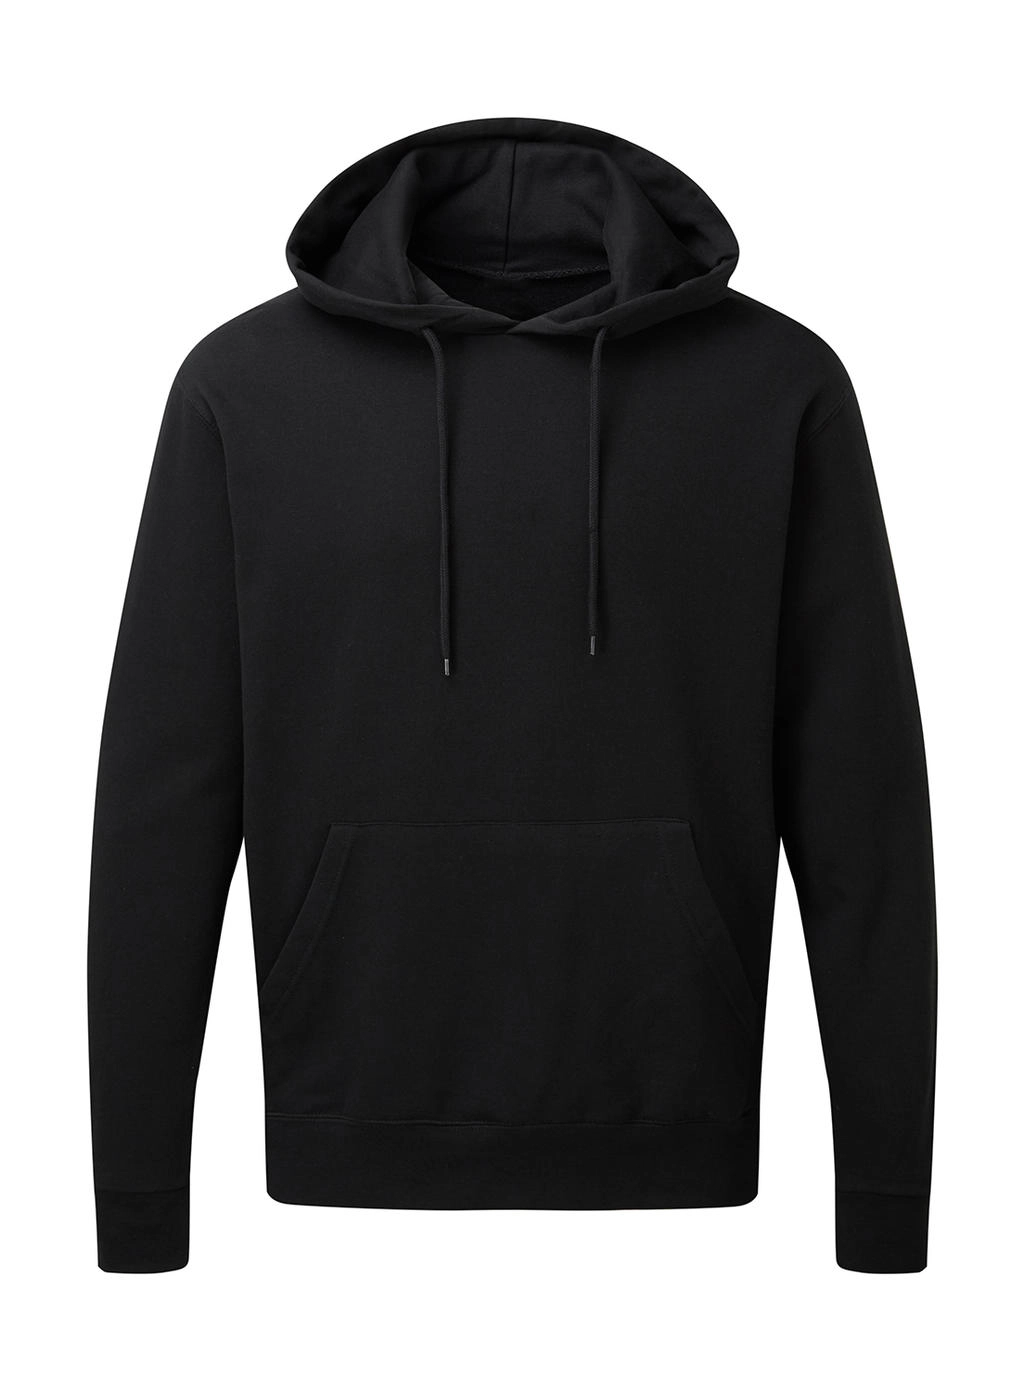 Hooded Sweatshirt Men zum Besticken und Bedrucken in der Farbe Black mit Ihren Logo, Schriftzug oder Motiv.